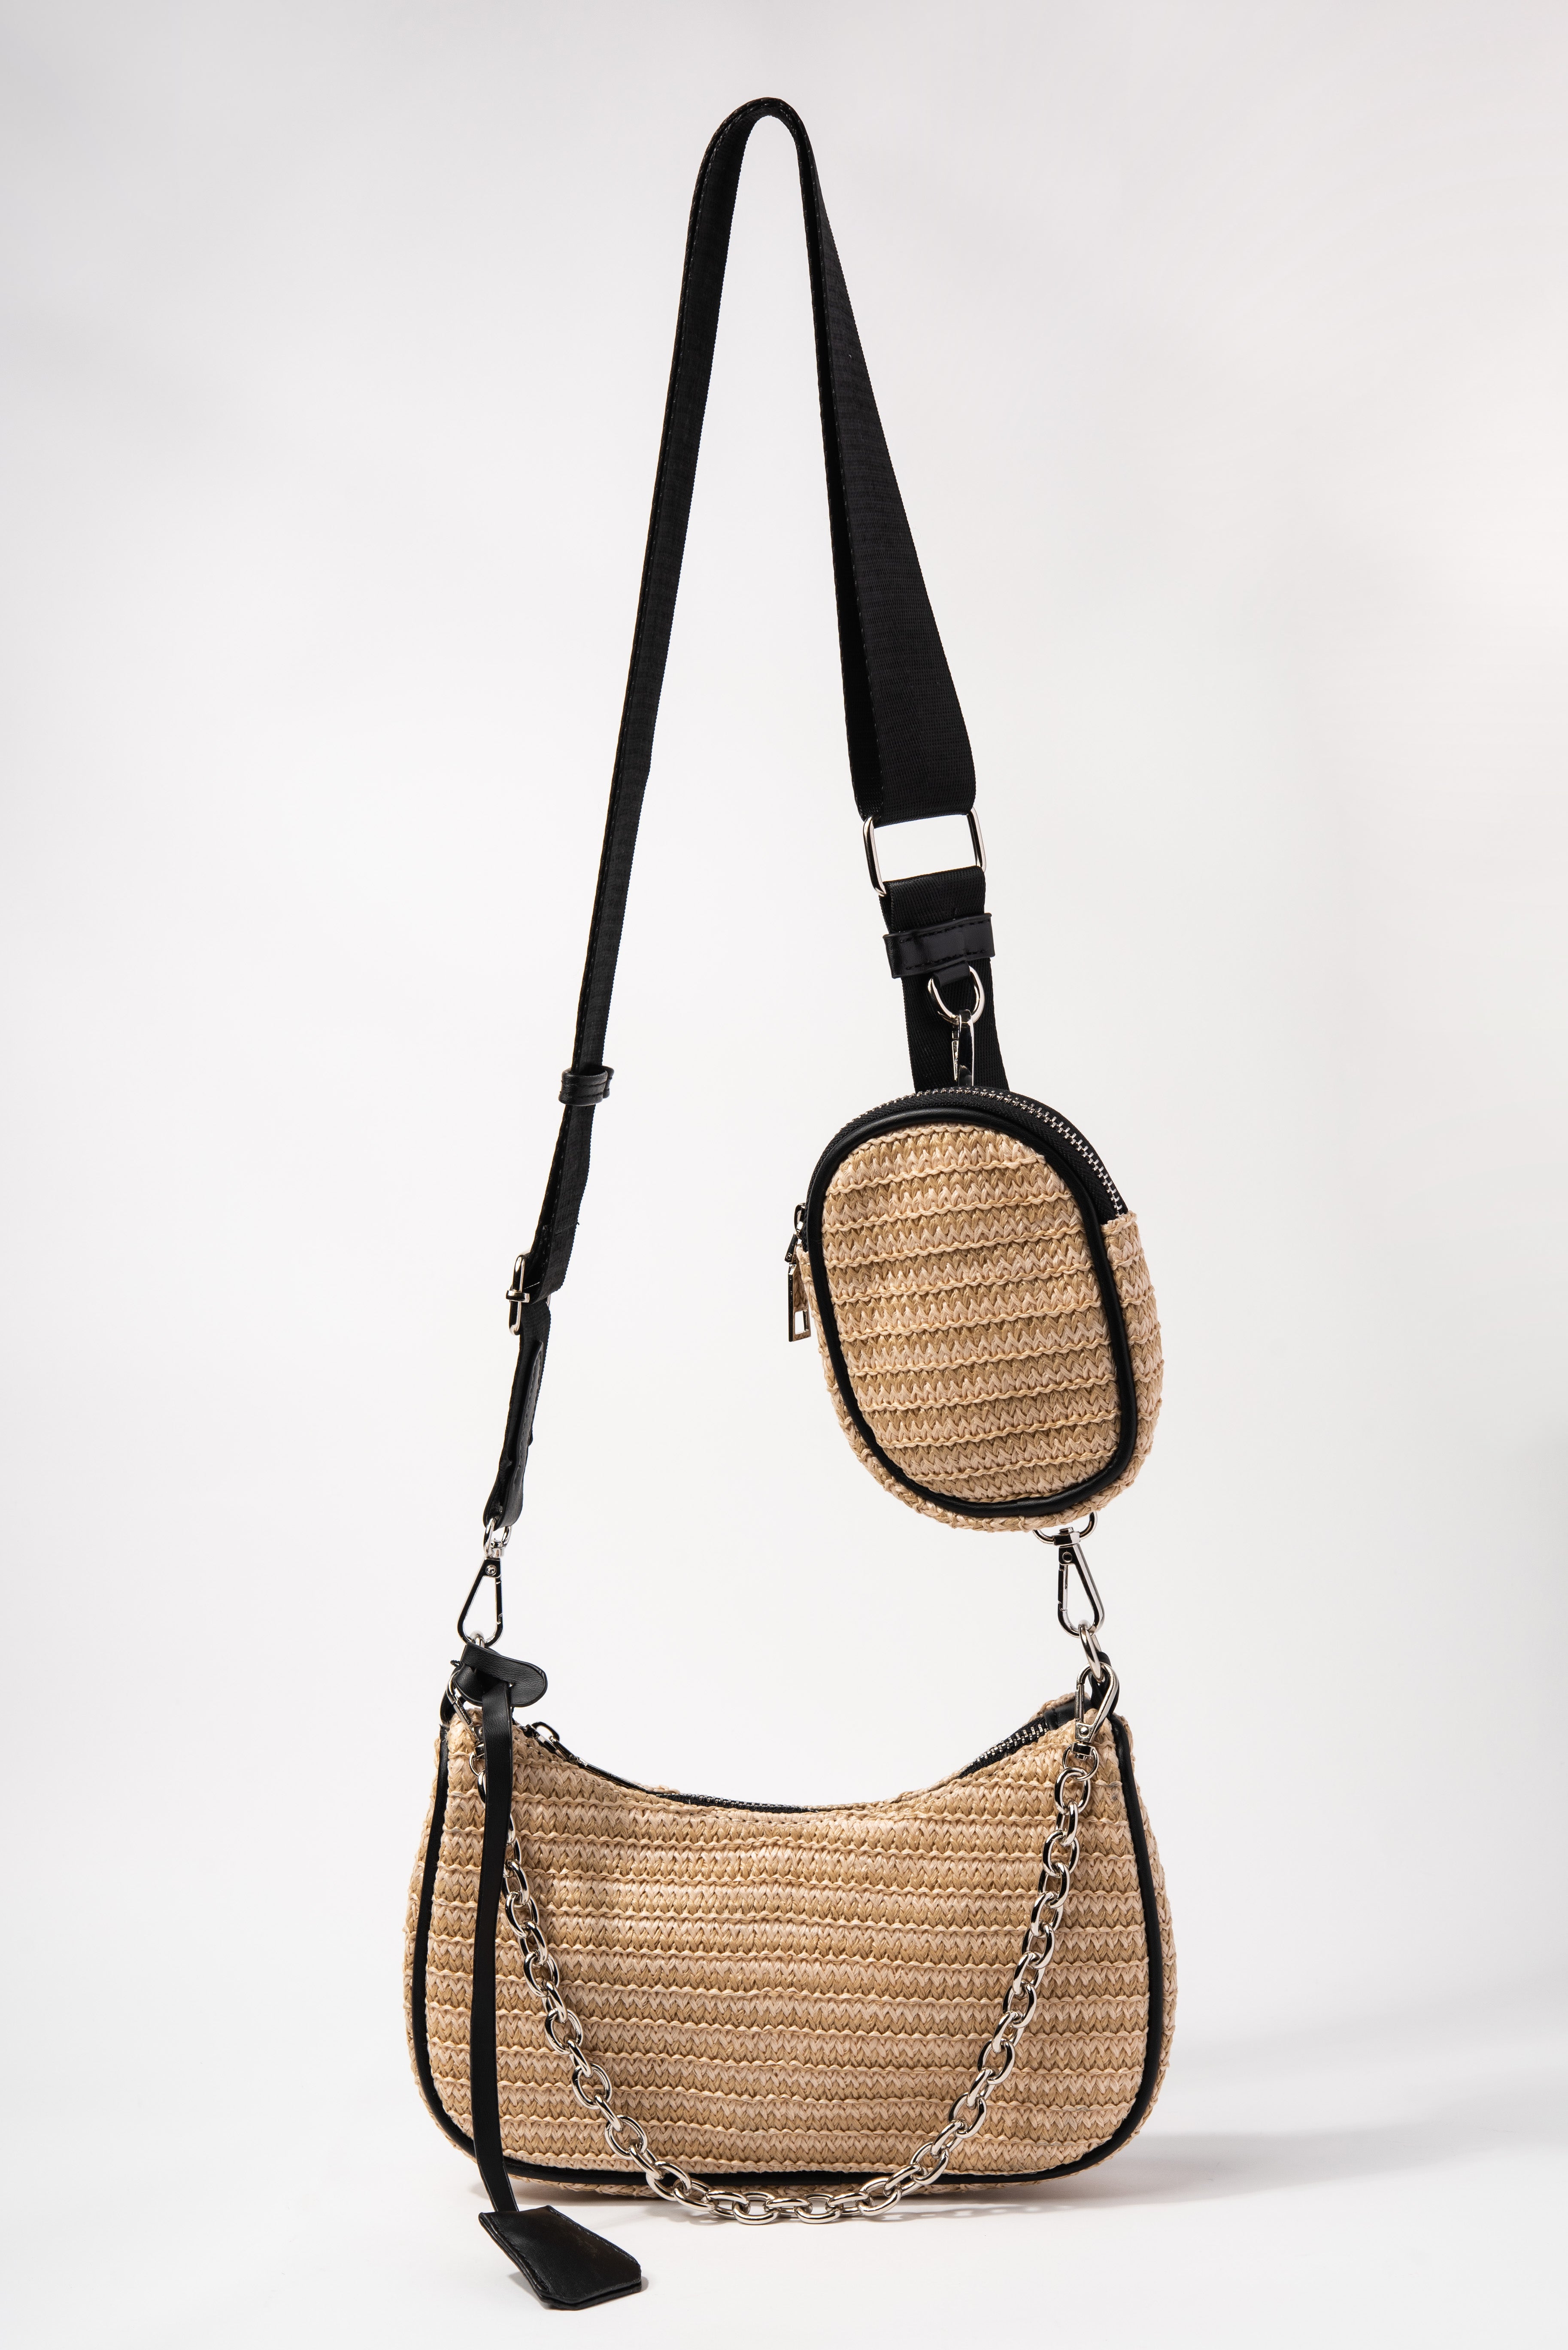 Leather Bag Strap Handles, Handbag Replacement Straps Detachable Purse  Handles ☆ | eBay